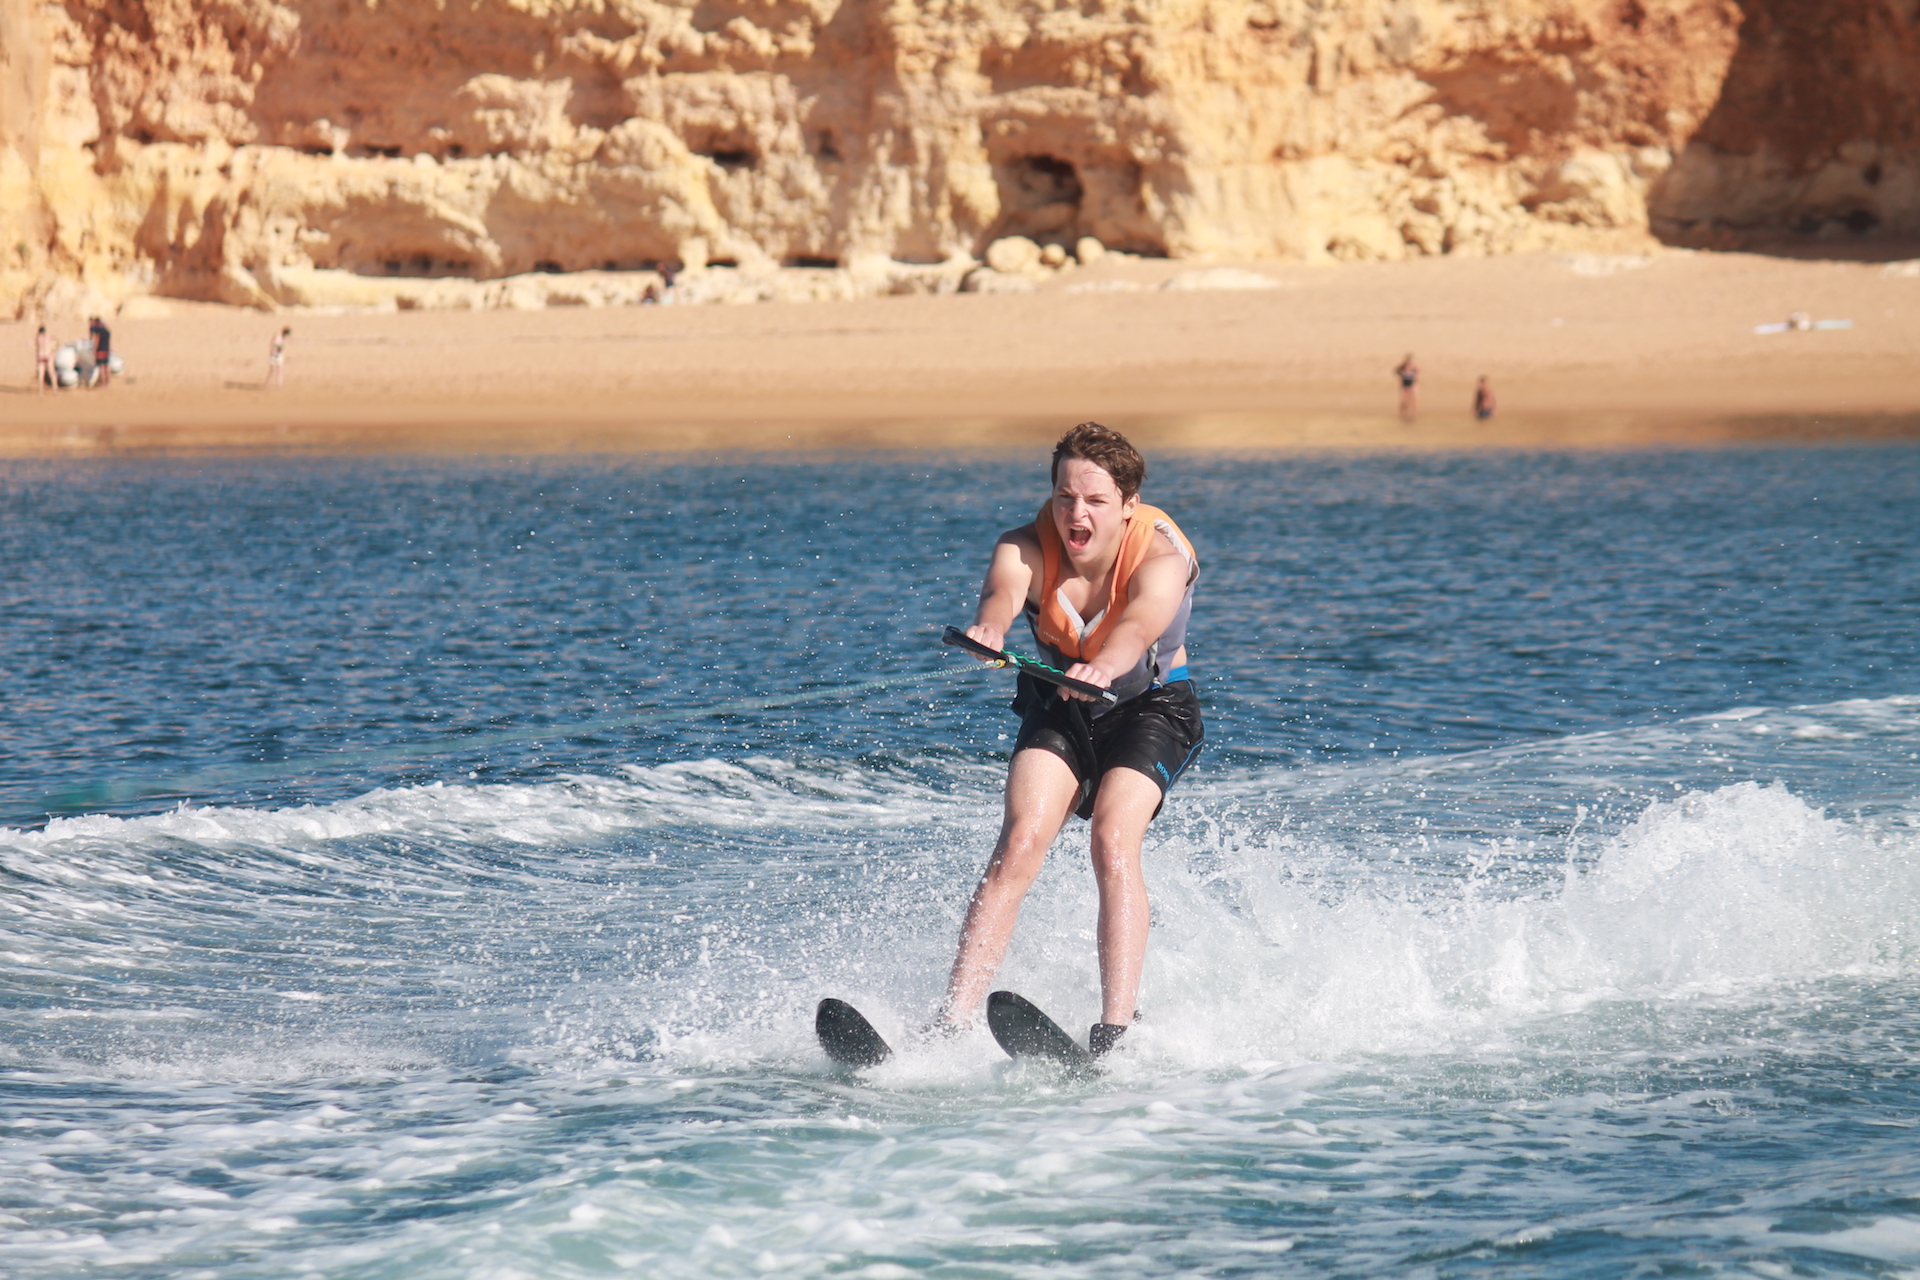 Water ski in the Algarve